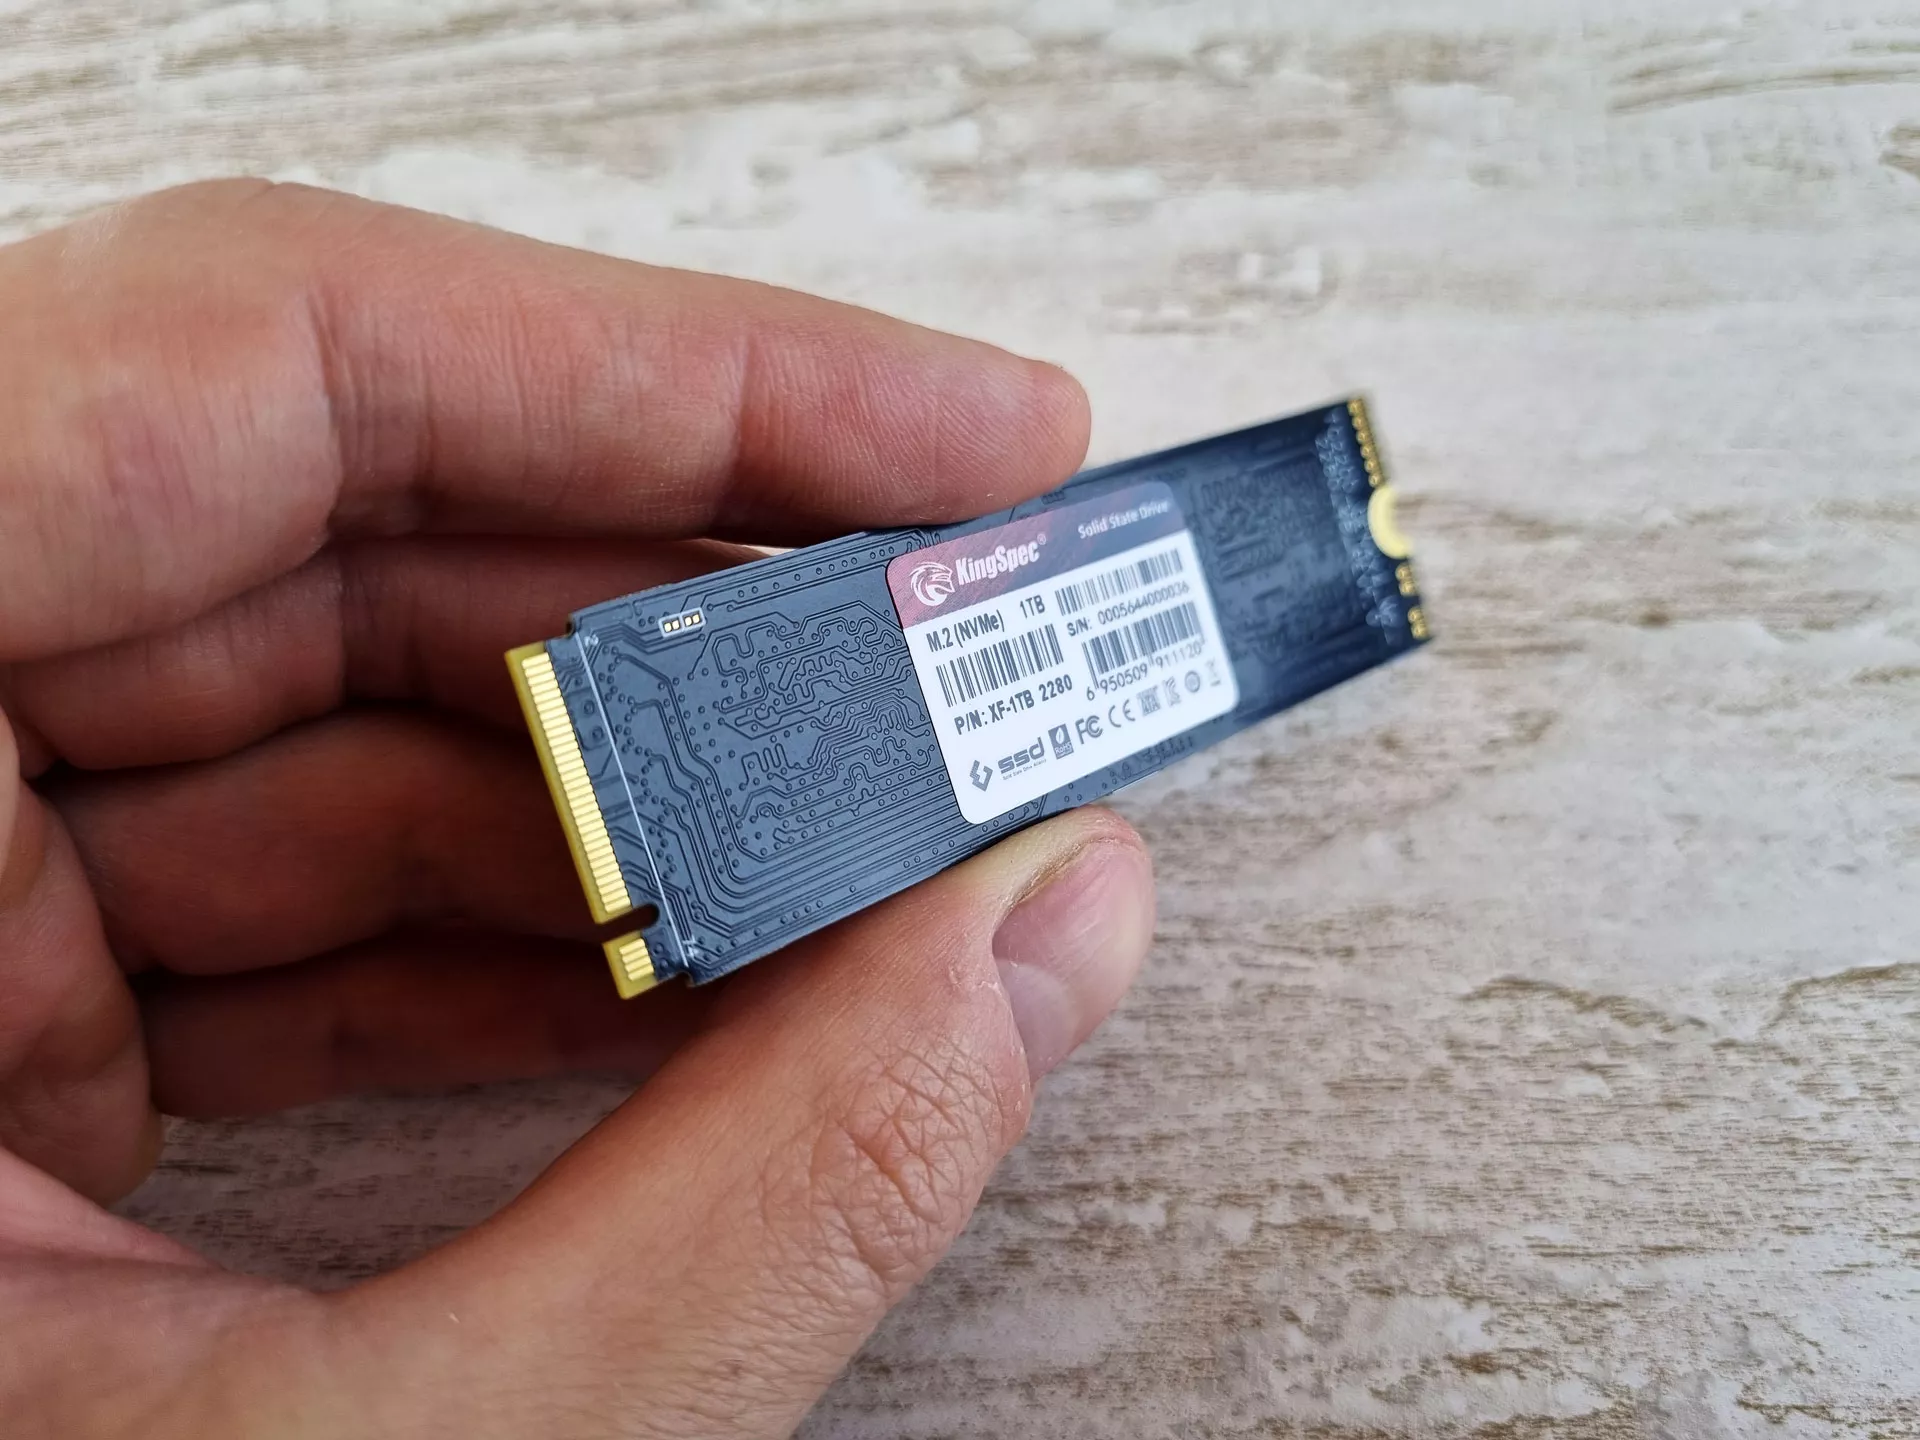 Обзор SSD NVMe KingSpec XF2280 1 Tb